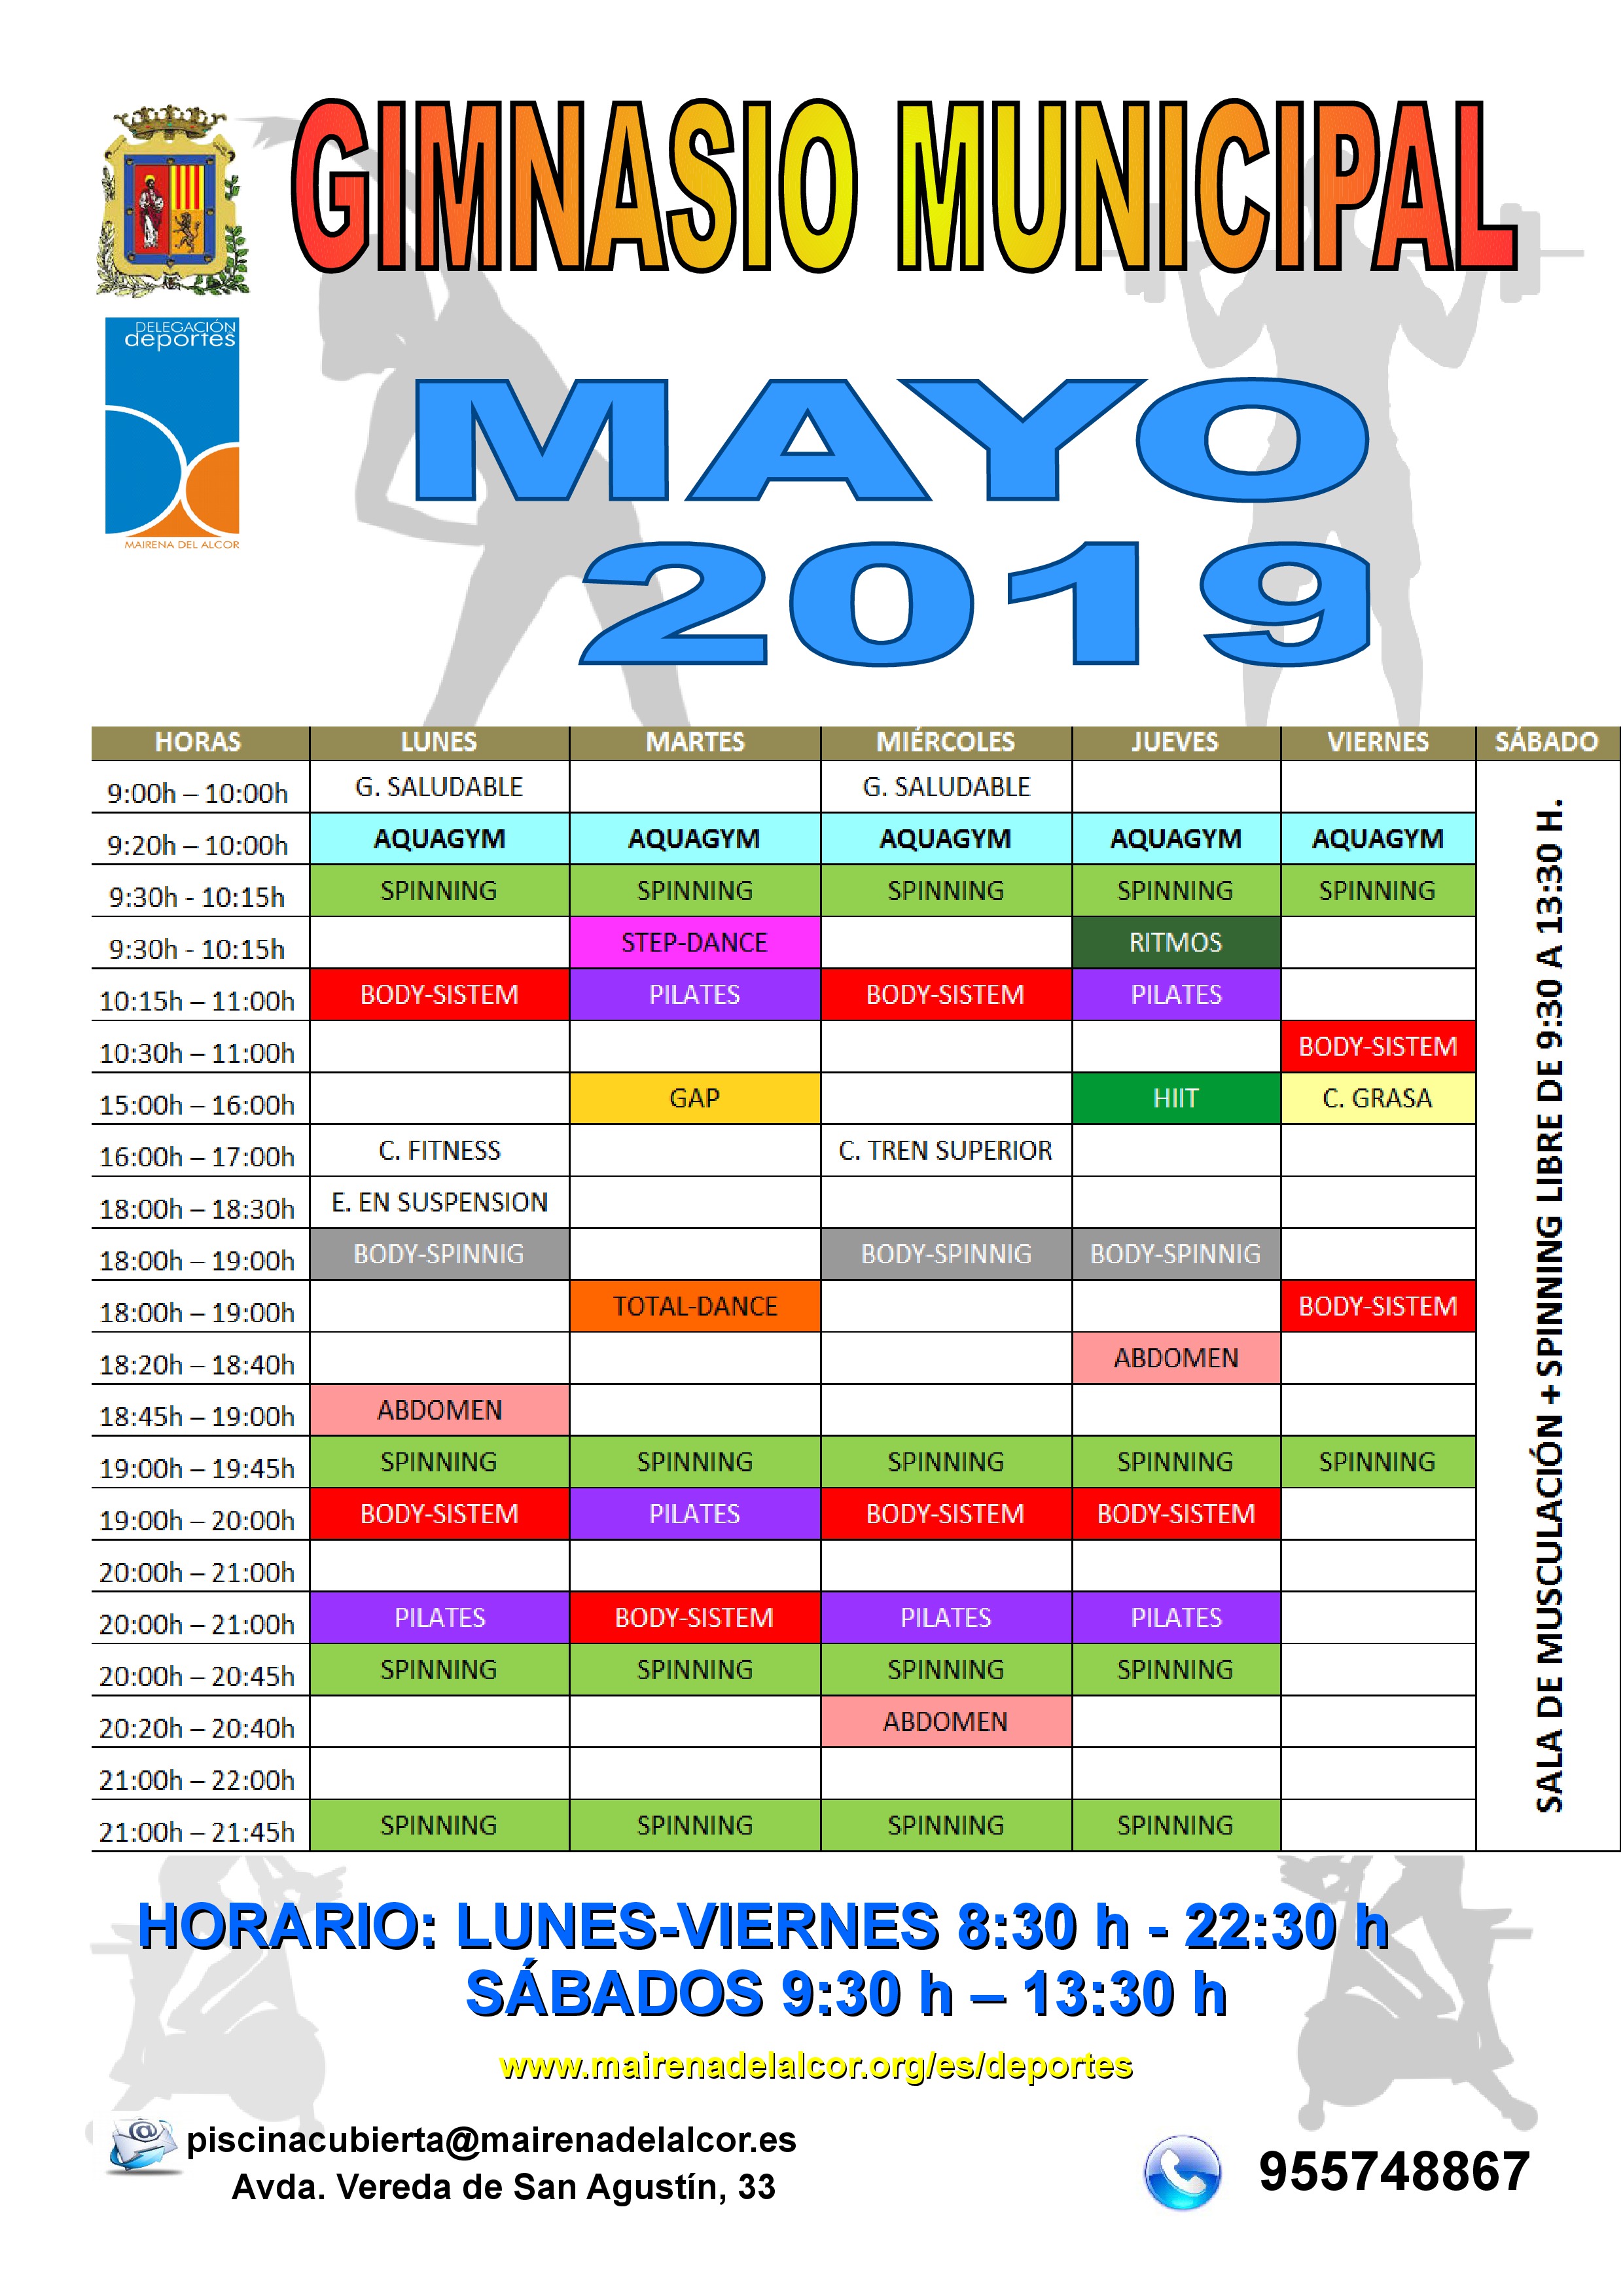 Mayo 2019 gym municipal